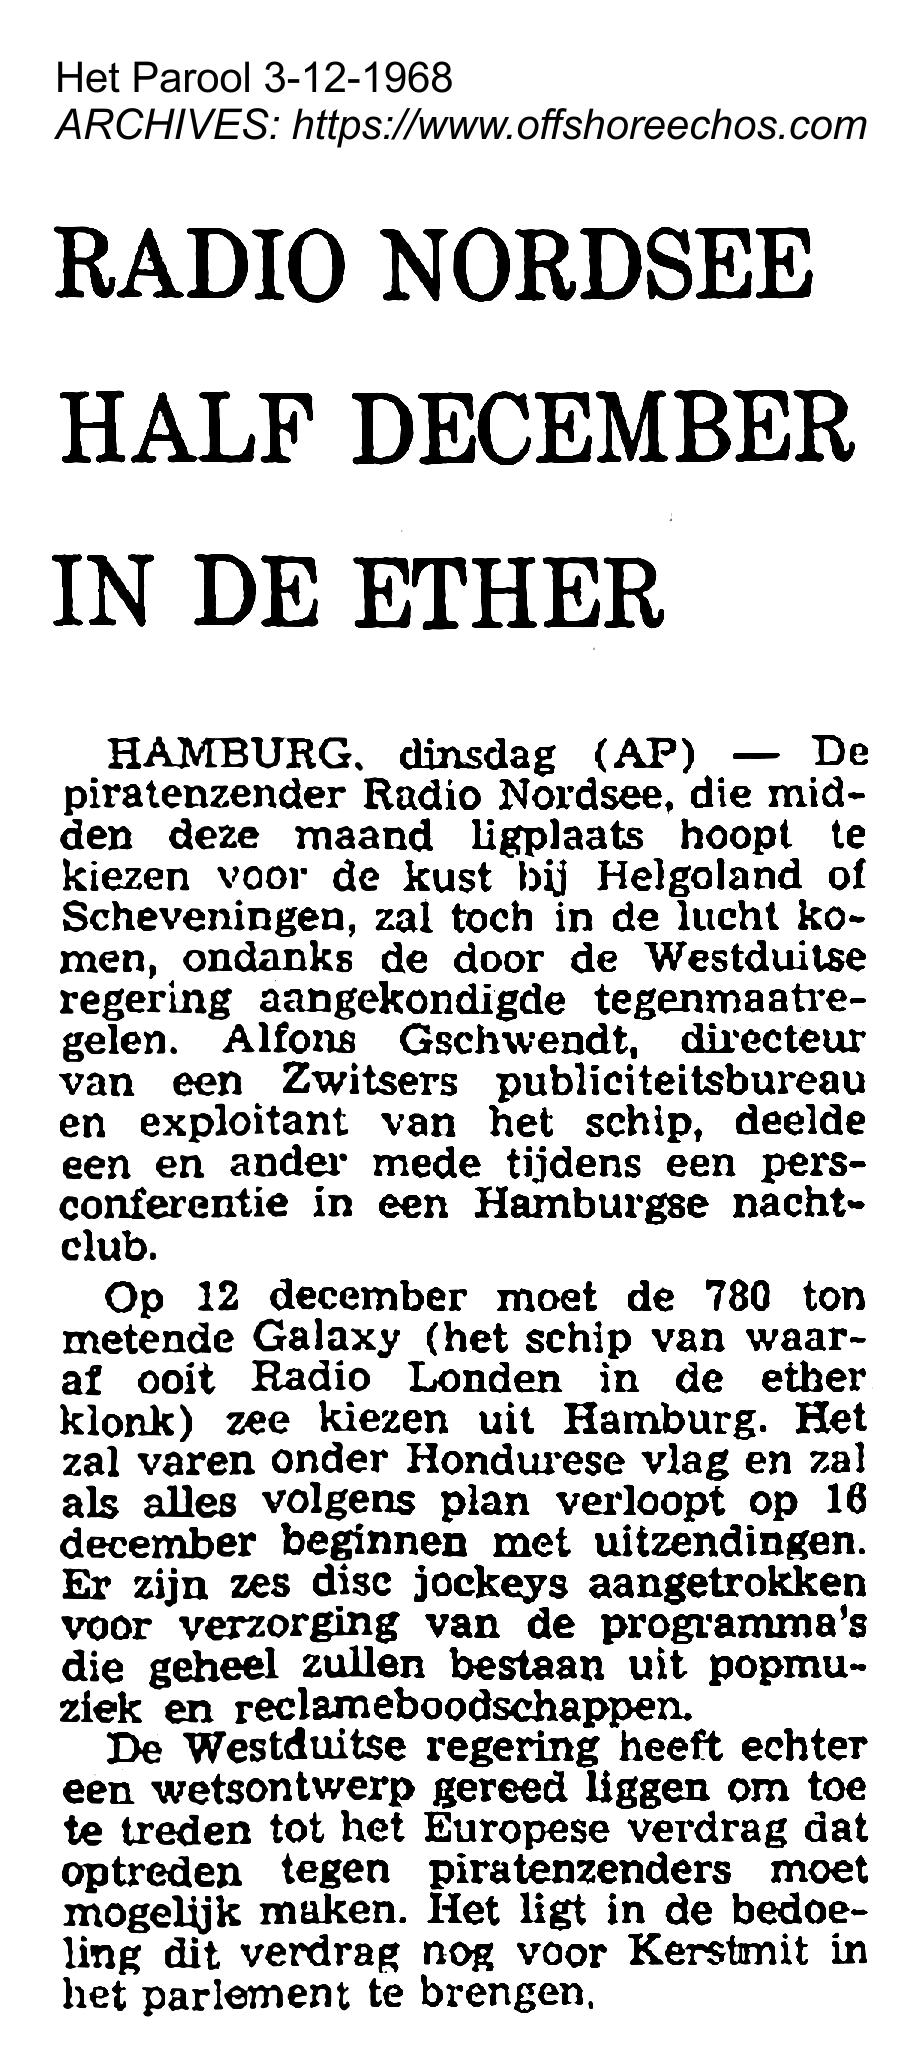 19681203 Het Parool Radio Nordsee half december in de ether.jpg